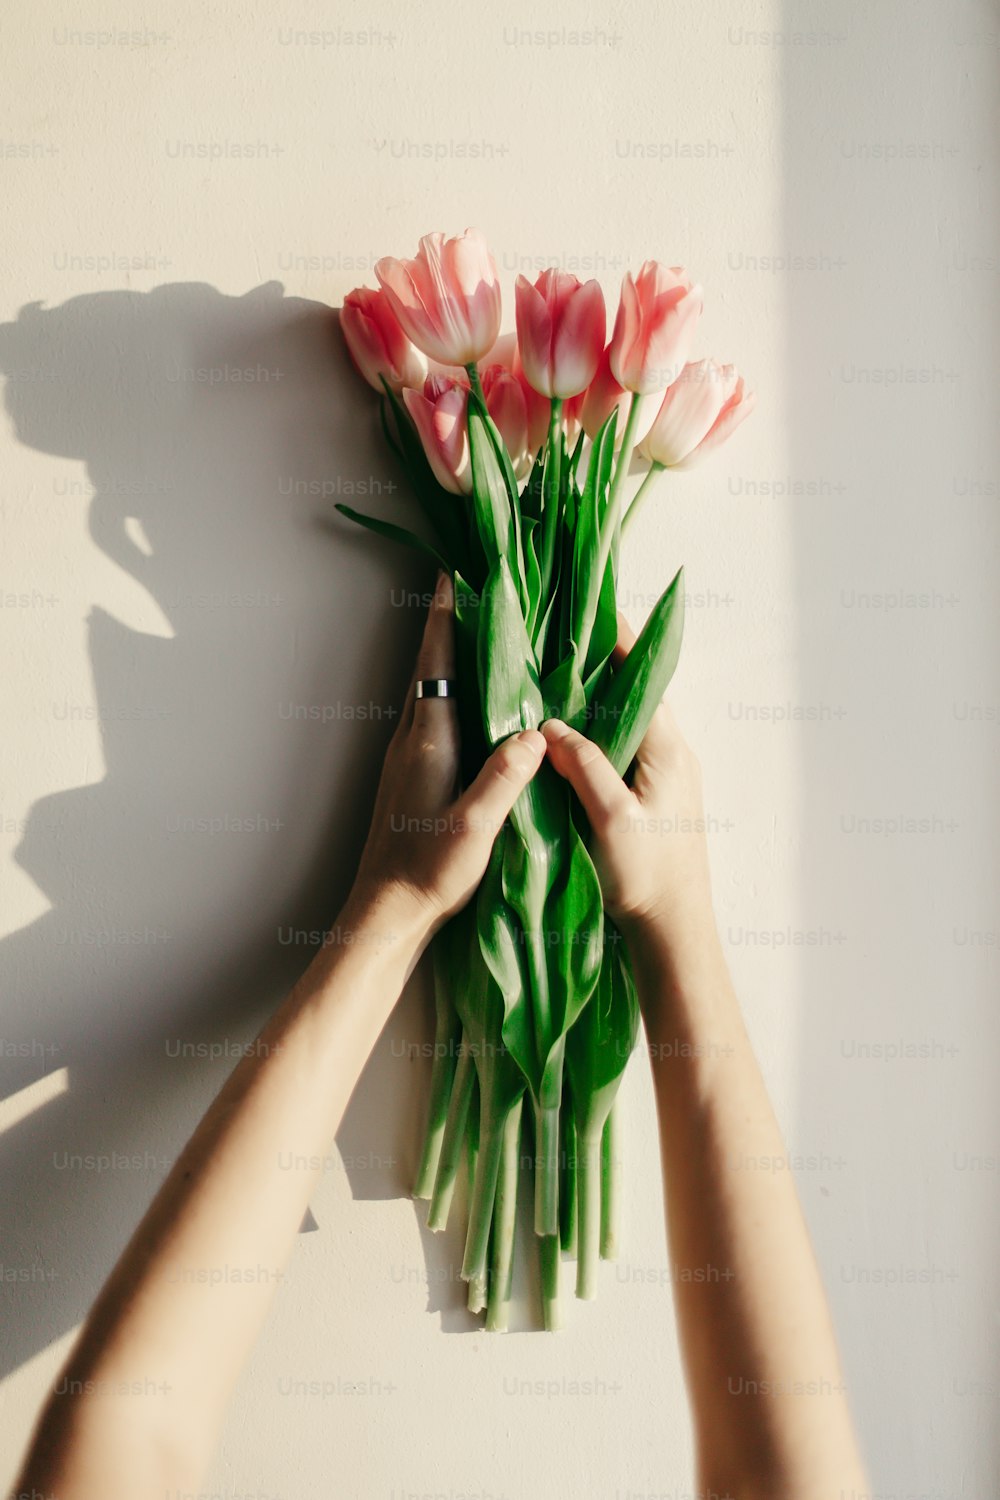 mãos segurando tulipas cor-de-rosa na luz suave da manhã na parede rústica branca perto da janela no fundo da casa. primavera humor fresco. conceito de workshop de blogs do instagram. espaço para texto